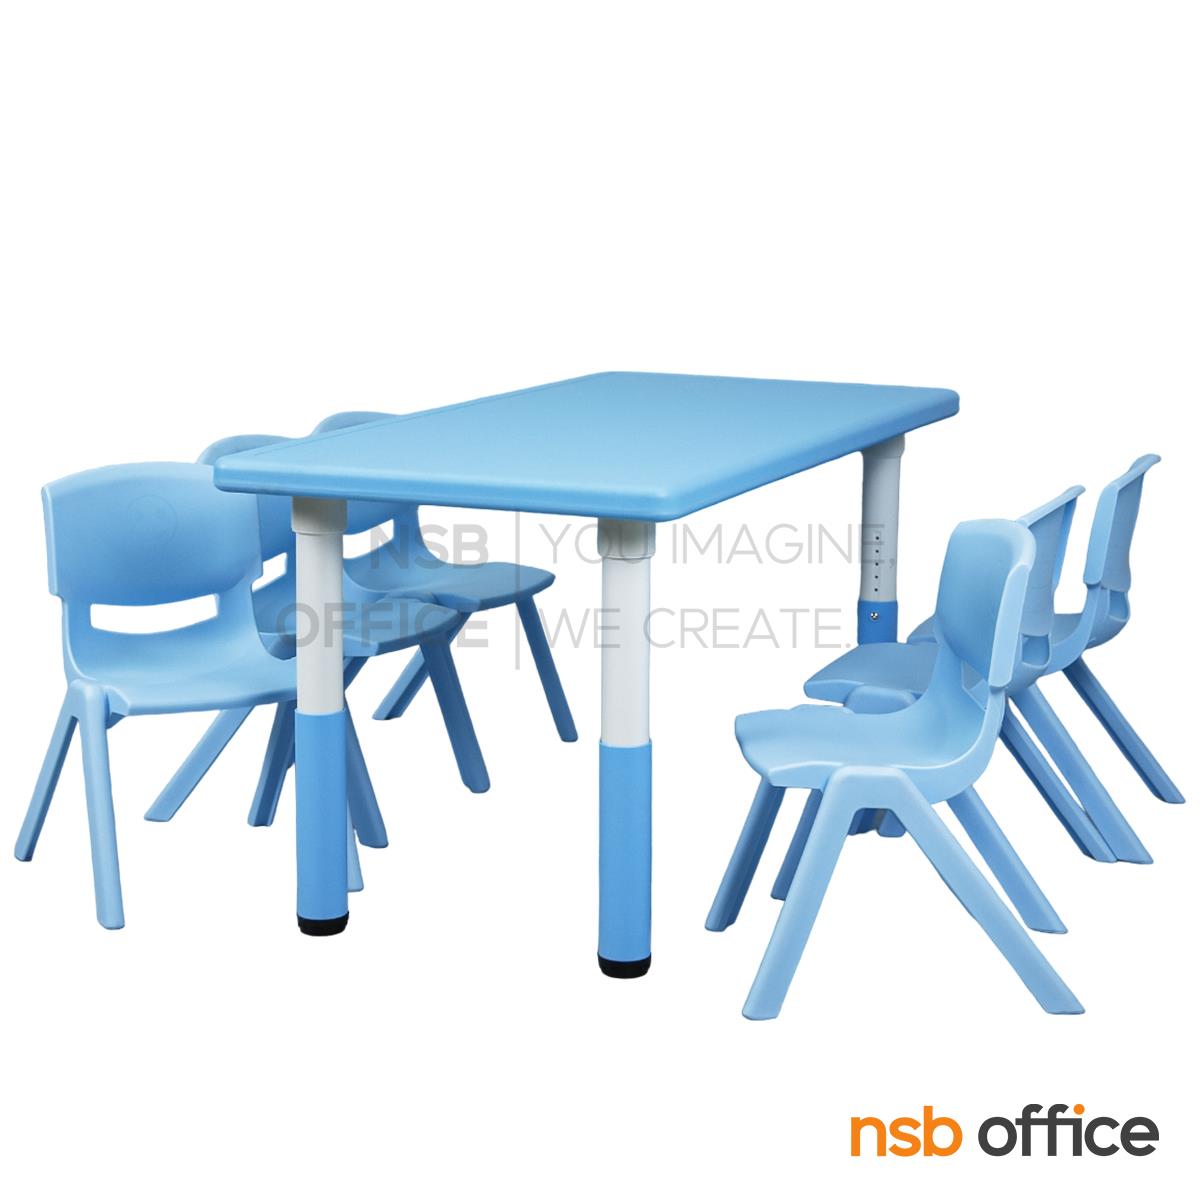 A17A104:ชุดโต๊ะและเก้าอี้นักเรียนสีสัน รุ่น Viva (วีว่า)  (โต๊ะ 1 + เก้าอี้ 6) 